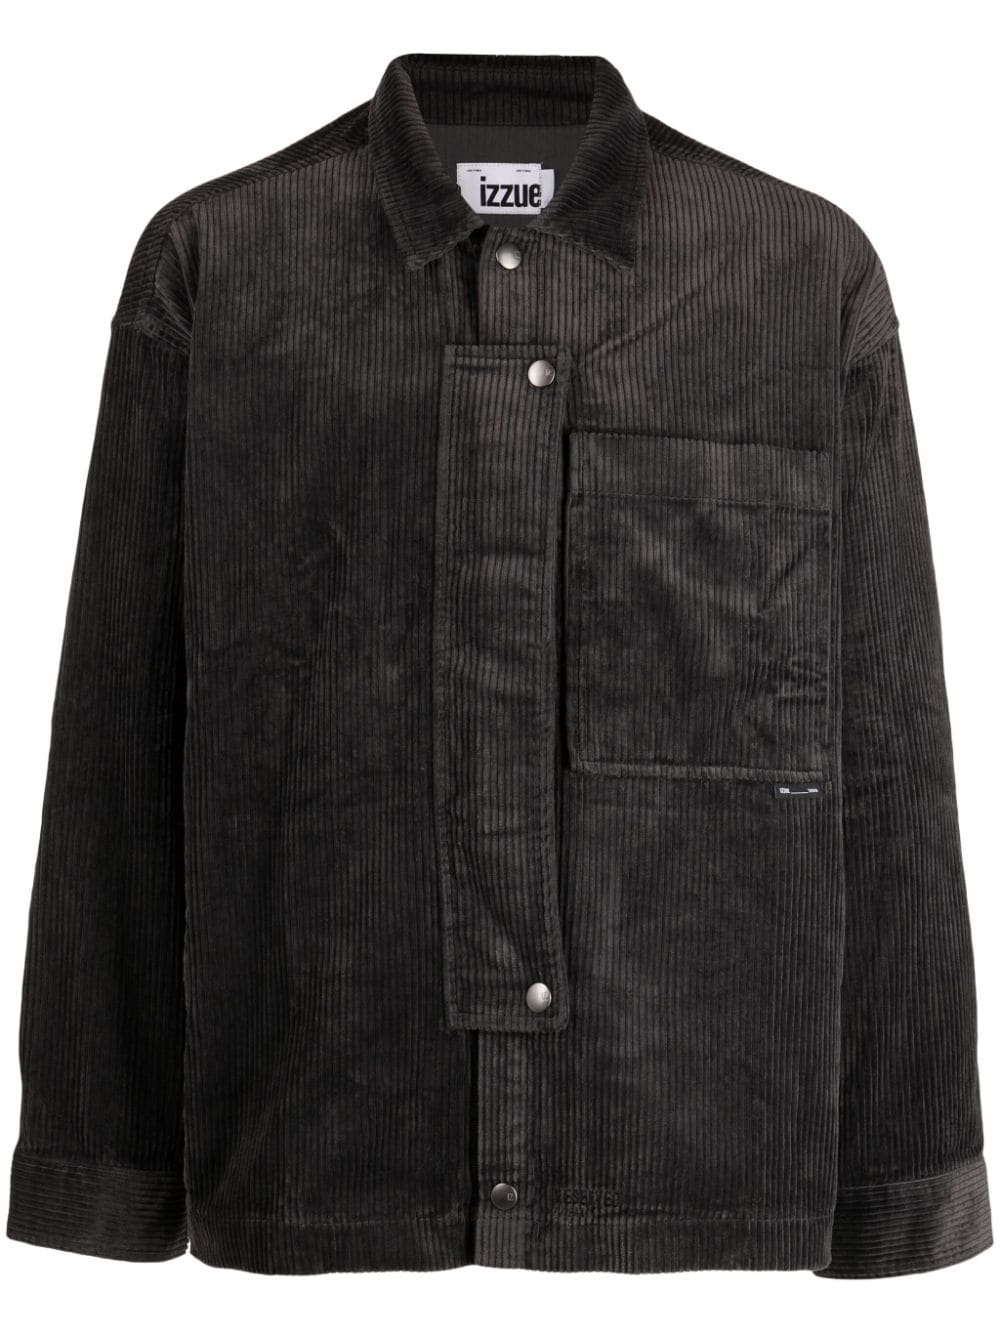 izzue corduroy cotton shirt jacket - Black von izzue